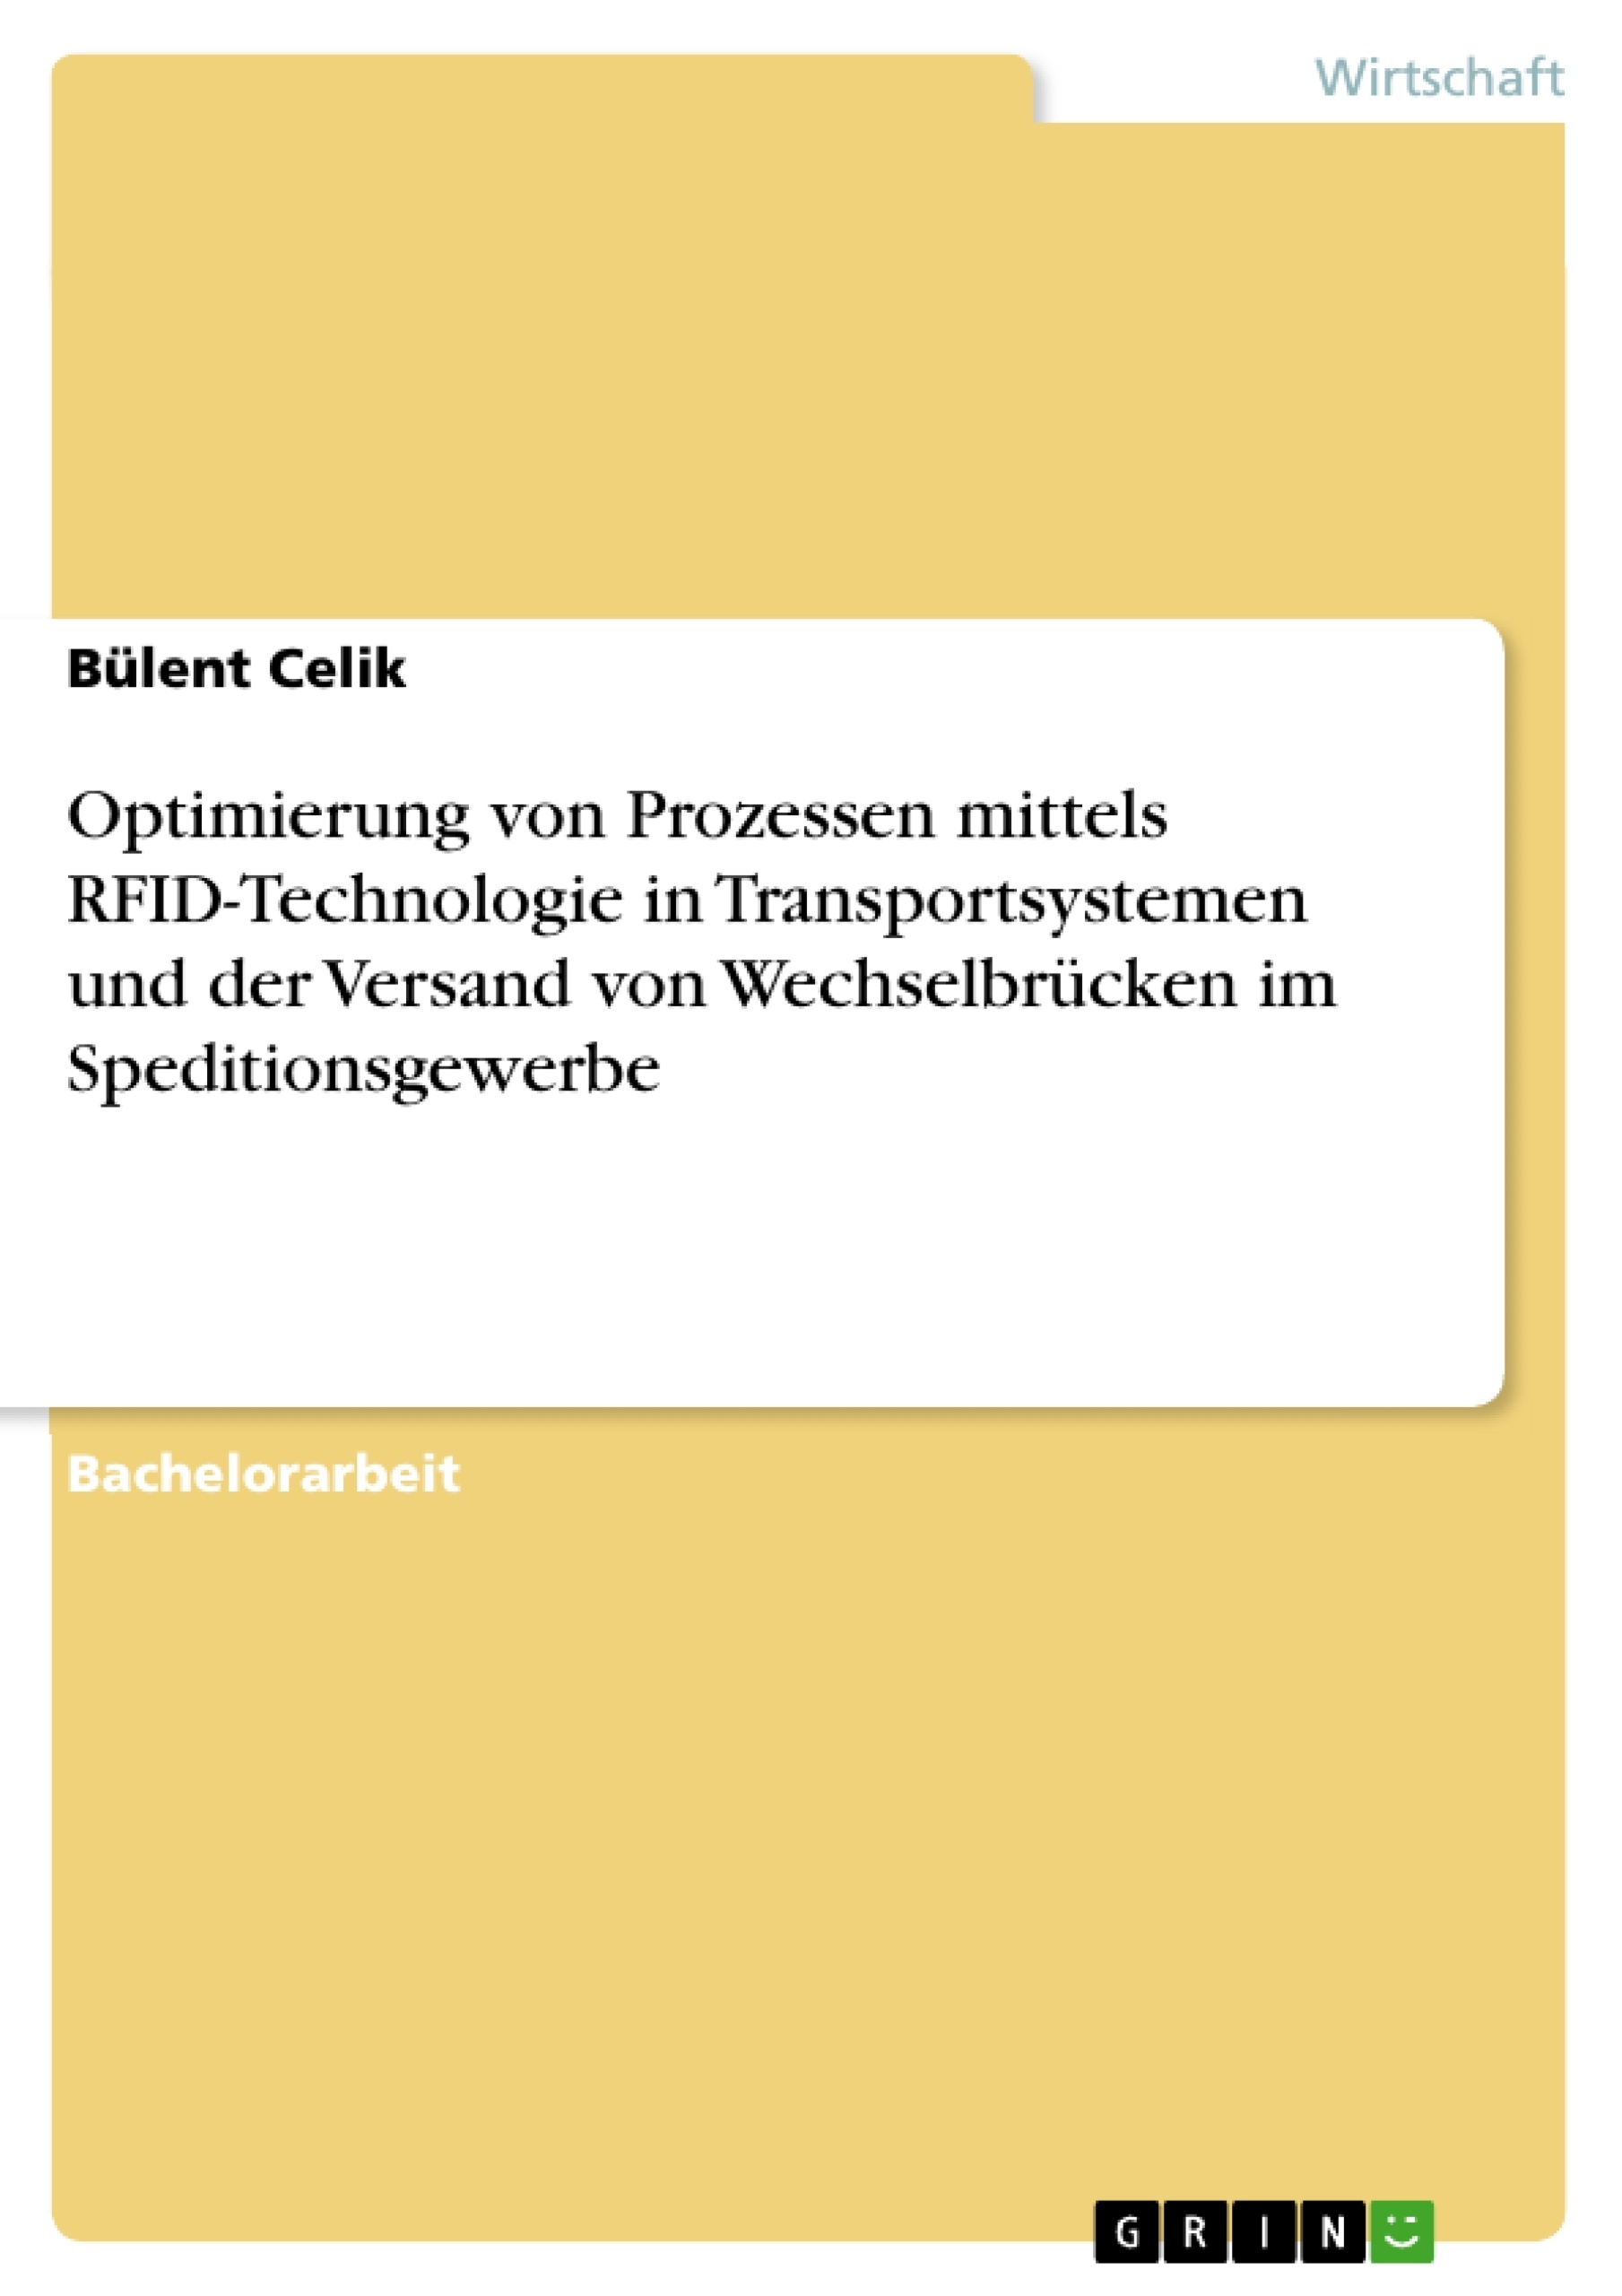 Title: Optimierung von Prozessen mittels RFID-Technologie in Transportsystemen und der Versand von Wechselbrücken im Speditionsgewerbe